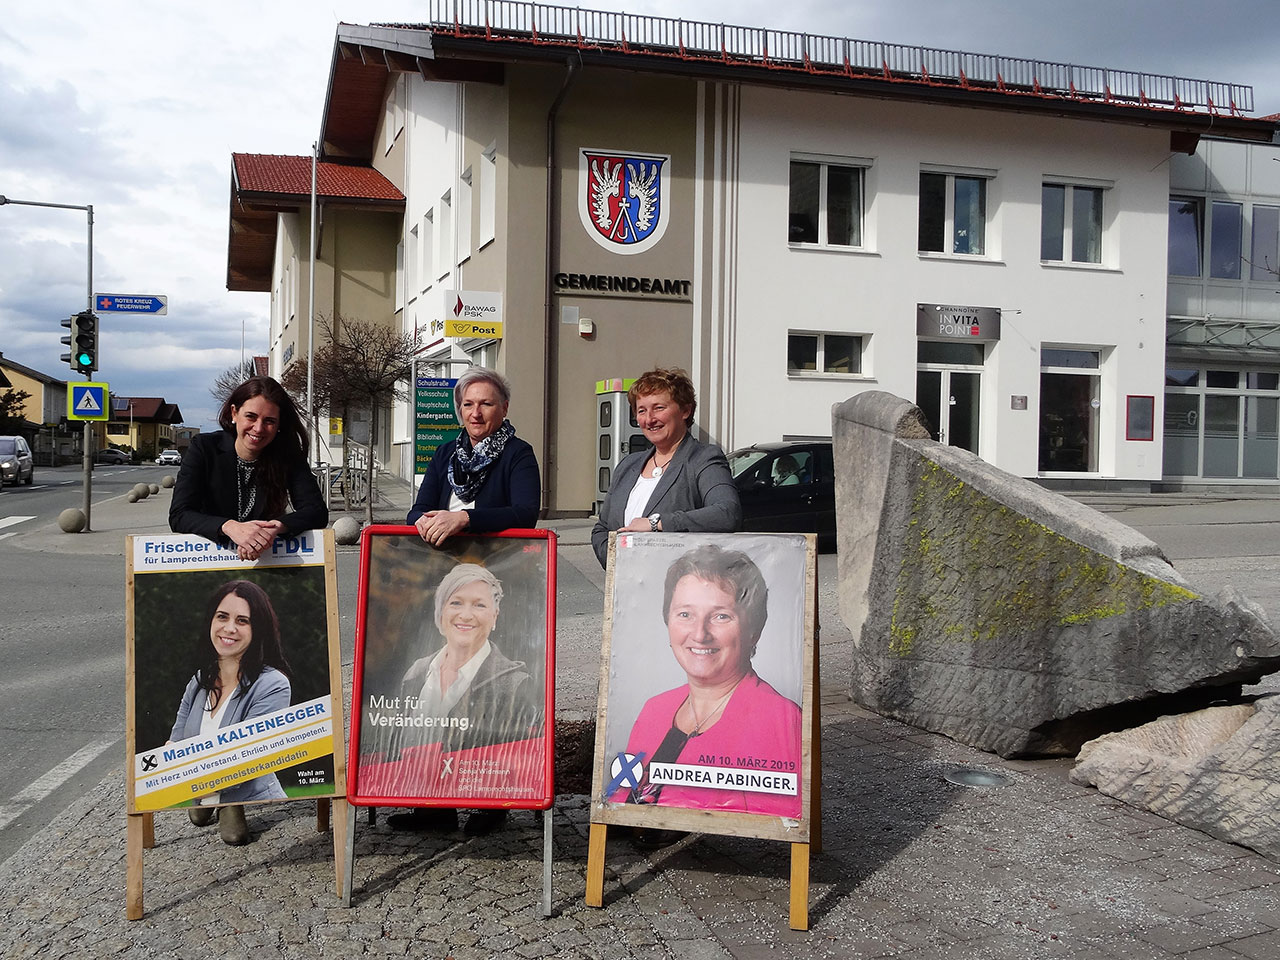 Drei Bürgermeister-Kandidatinnen Kaltenegger, Widmann und Pabinger